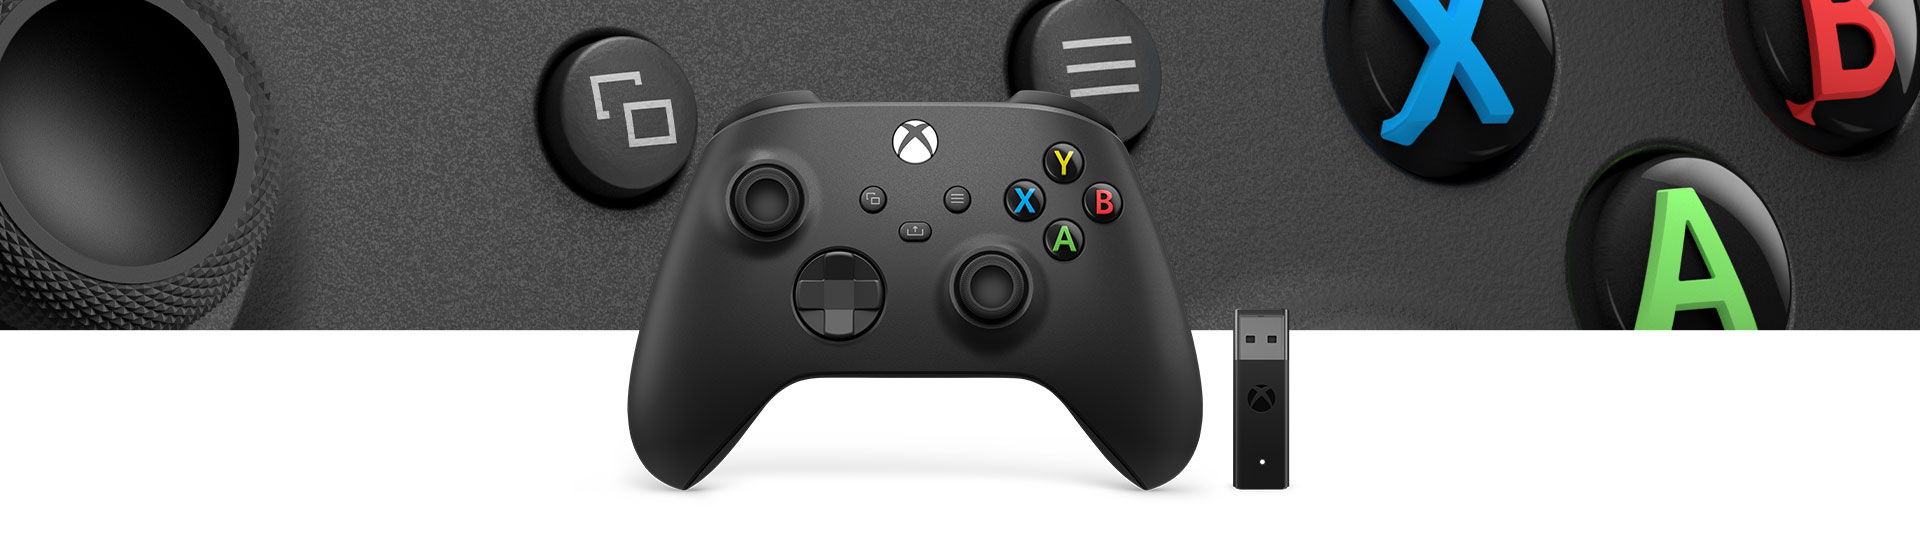 Mando inalámbrico Xbox + Adaptador inalámbrico para Windows 10 con un primer plano de la textura superficial del mando